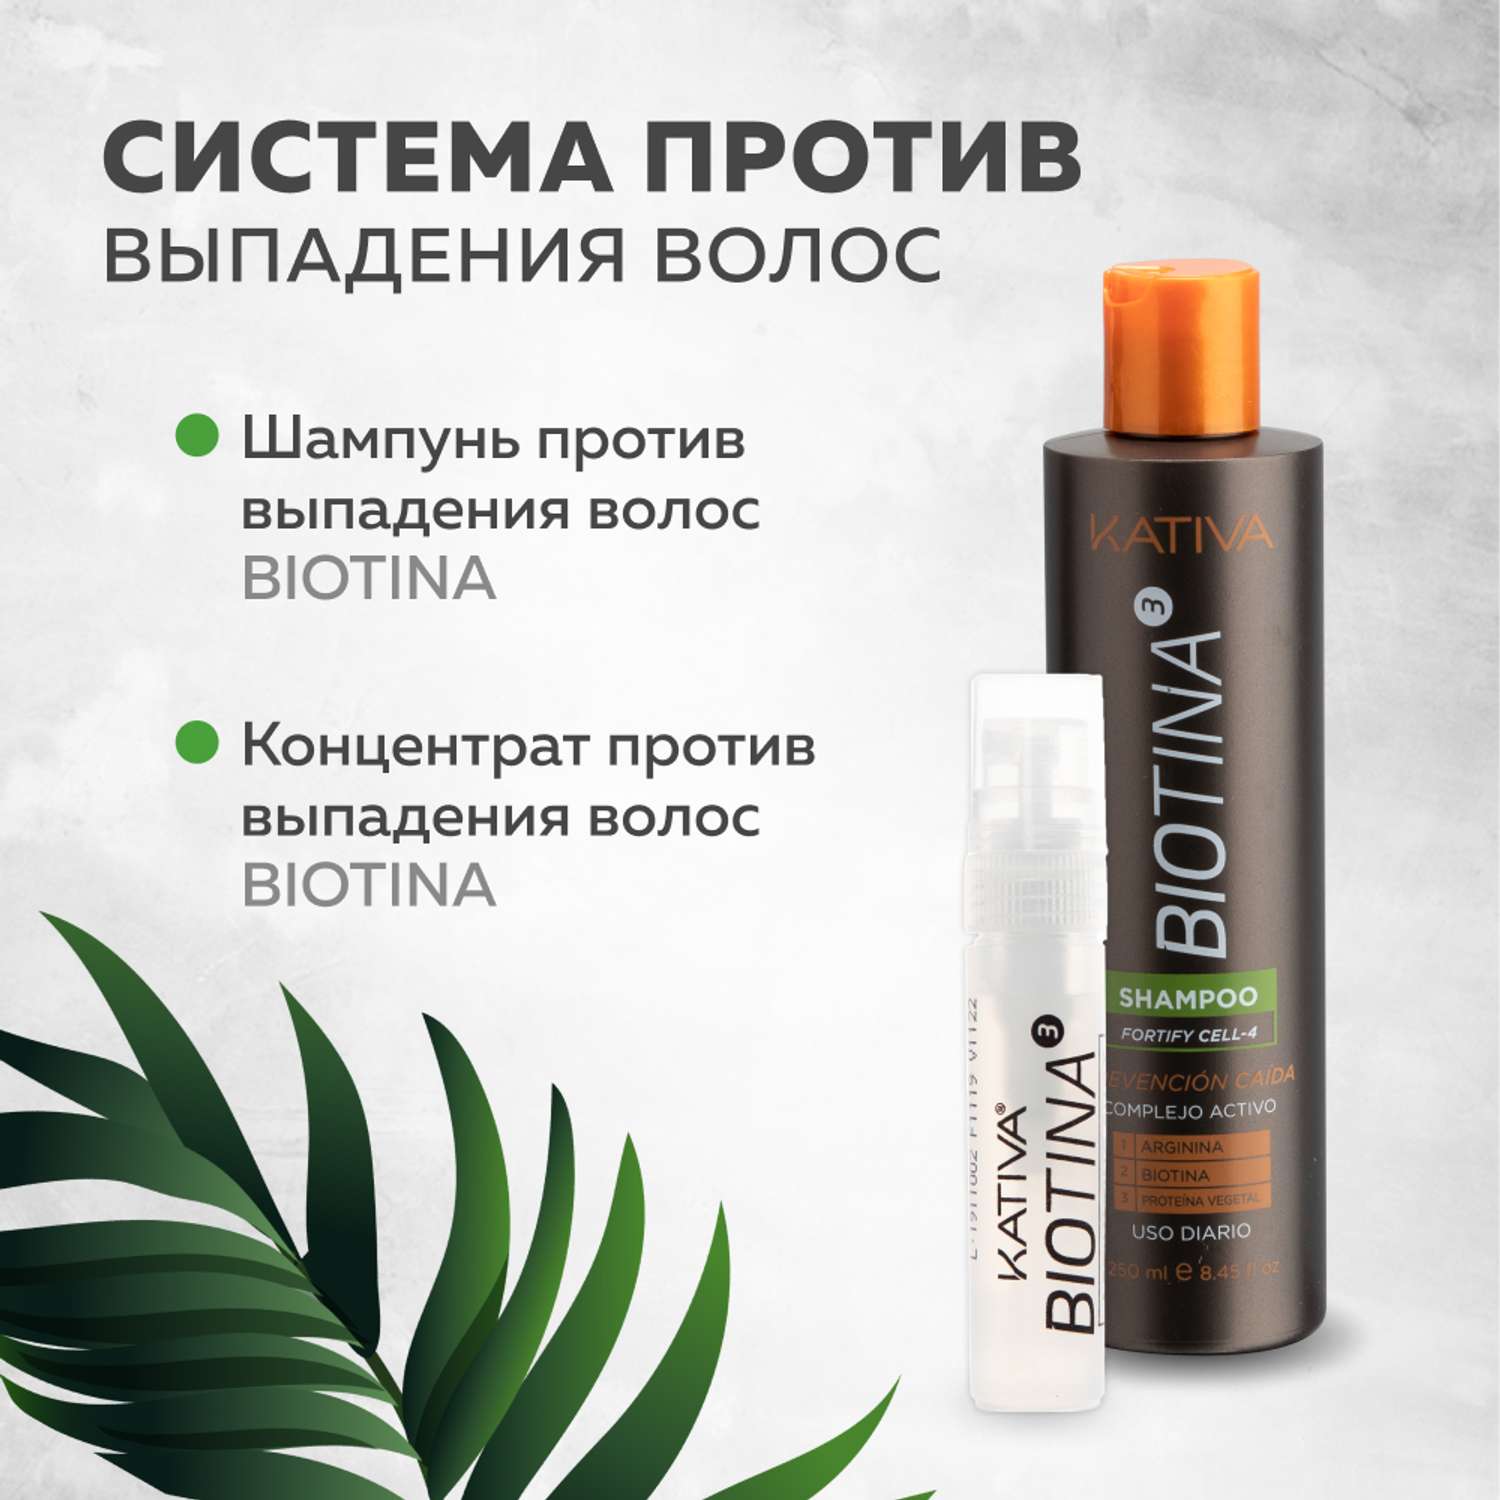 Тоник Kativa против выпадения волос с биотином Biotina 100 мл - фото 5